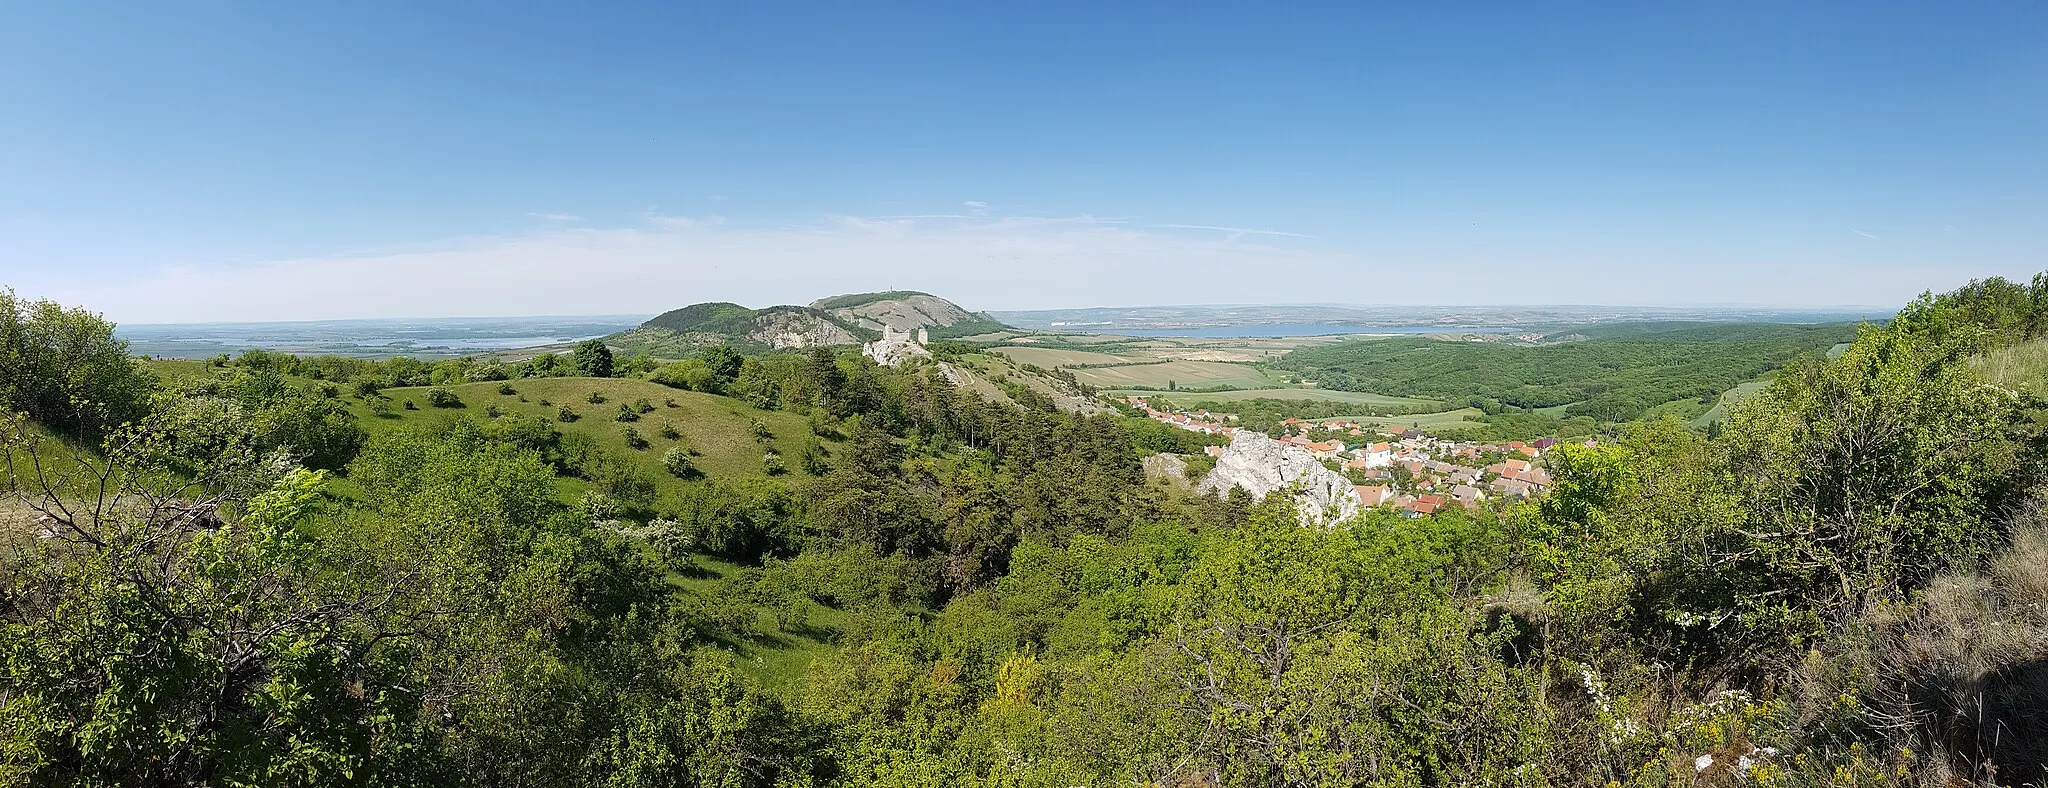 Photo showing: Tabulová hora near Klentnice, Jihomoravský kraj, Czech Republic
Looking north